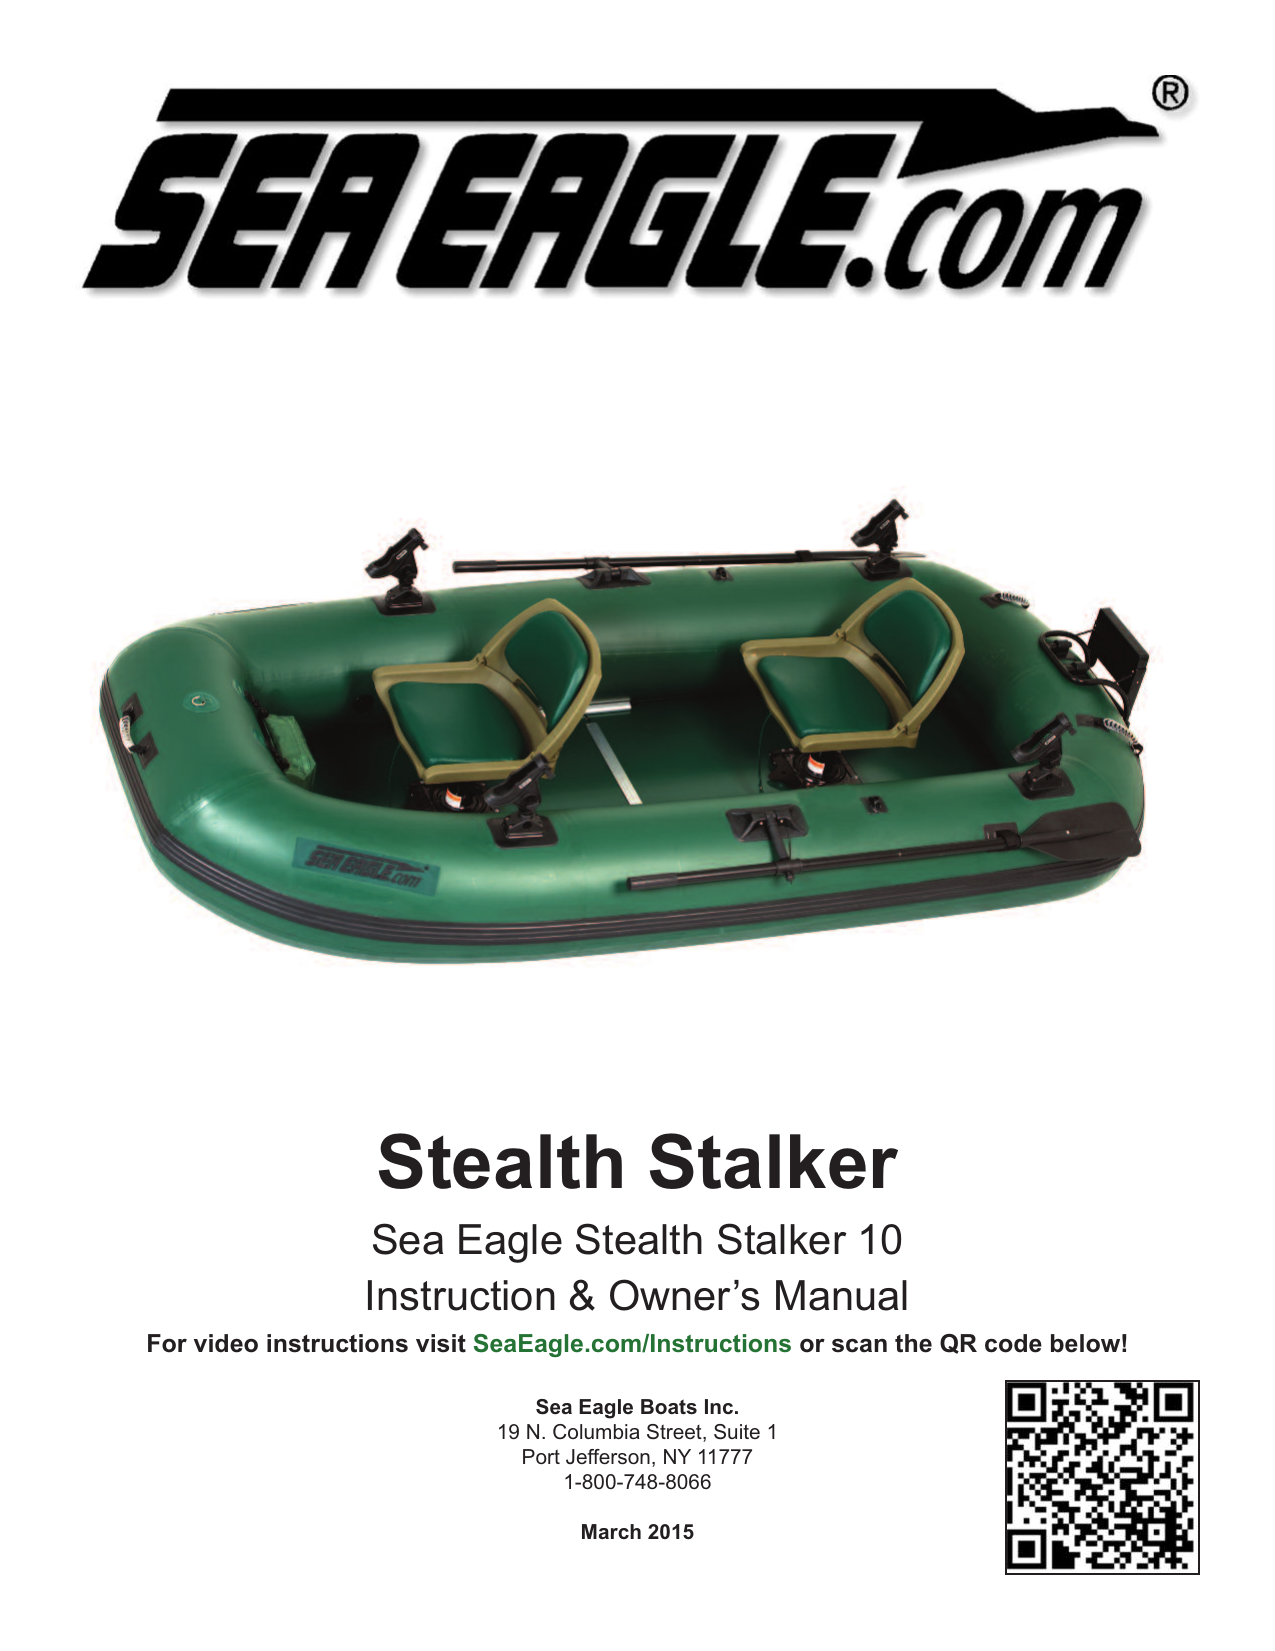 SEA EAGLE STS10 Stealth Stalker Owner's Manual